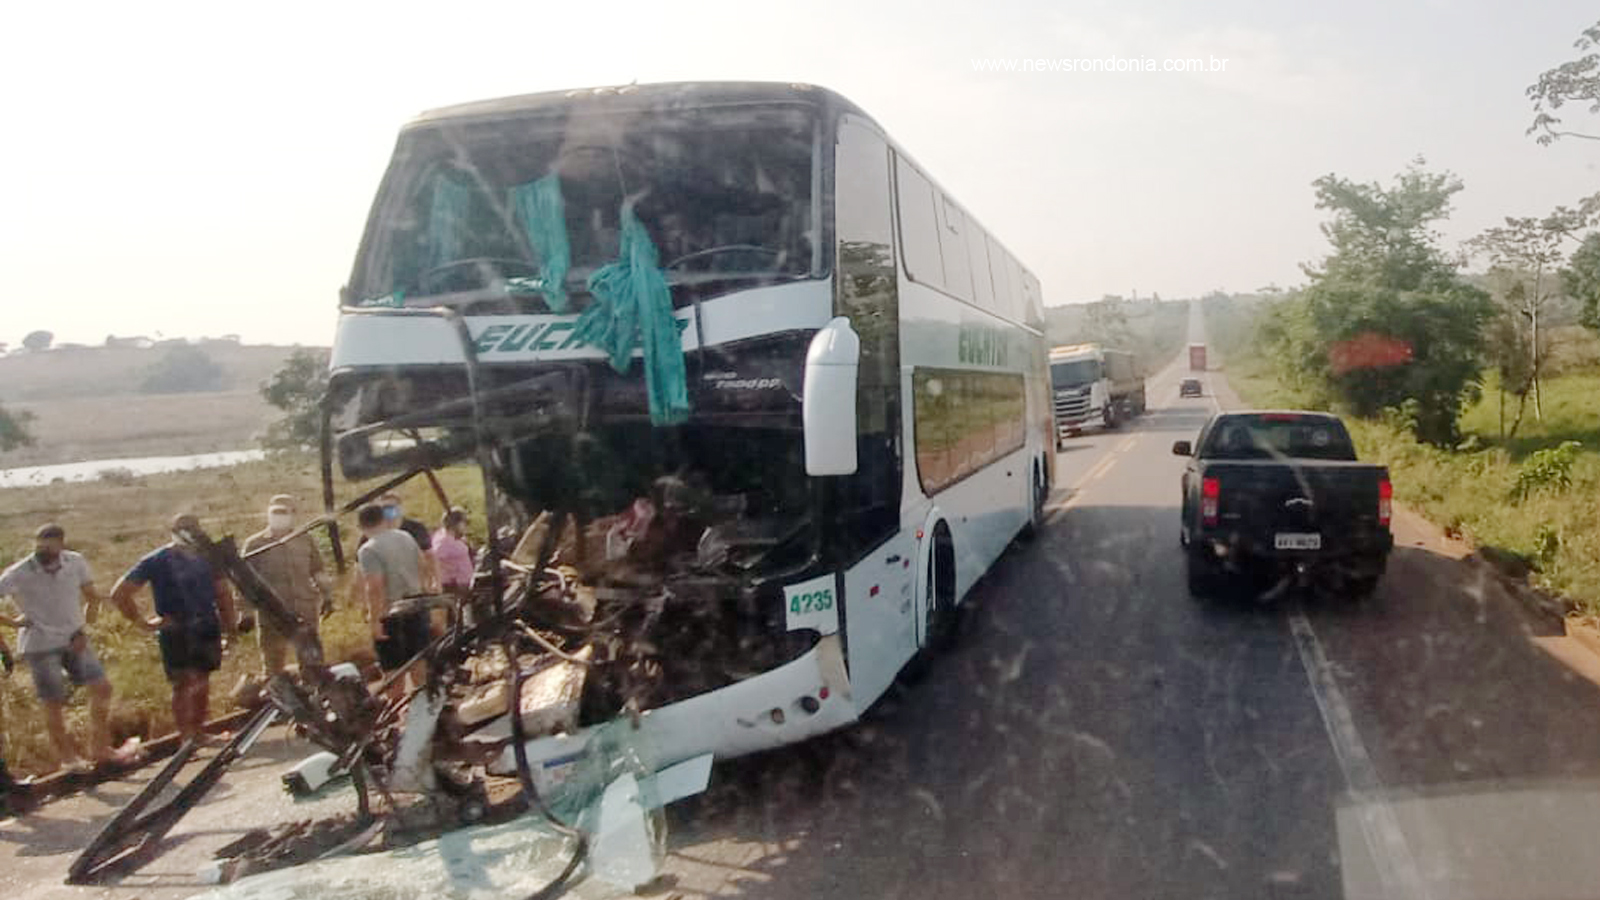 URGENTE - Ônibus da Eucatur fica destruído após colisão na BR-364 - News Rondônia